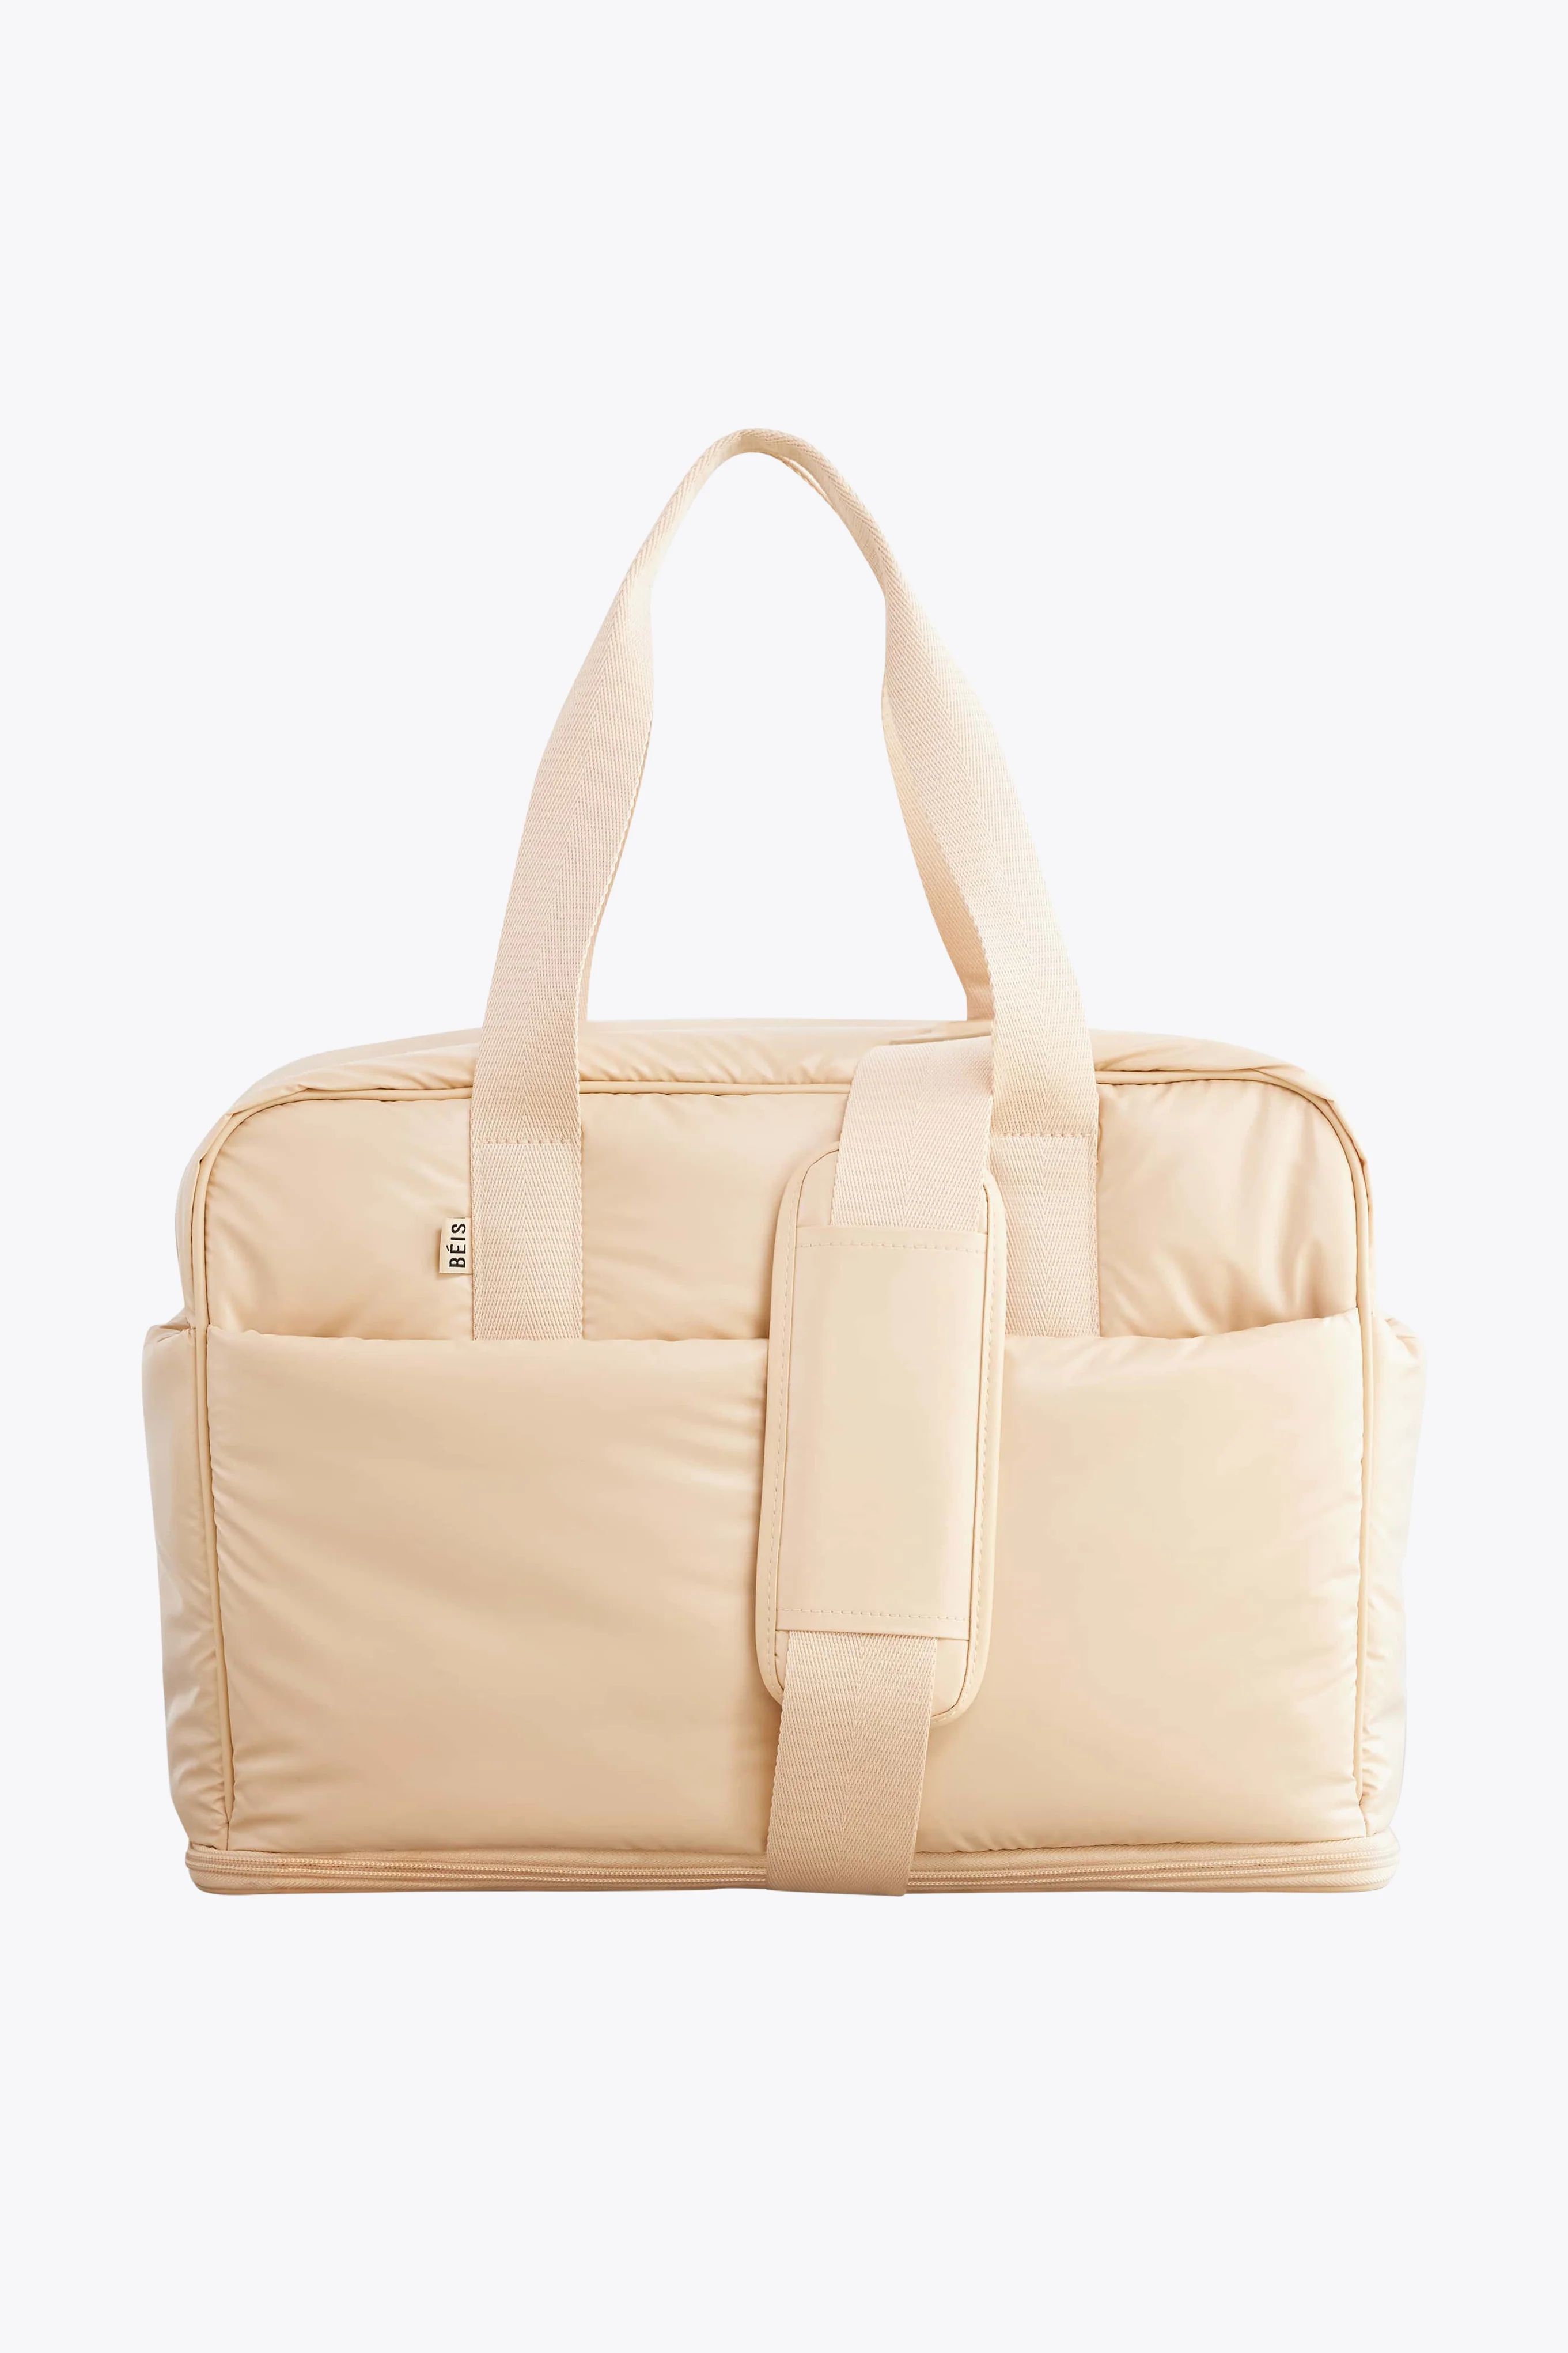 Expandable Duffle Bag | BÉIS Travel